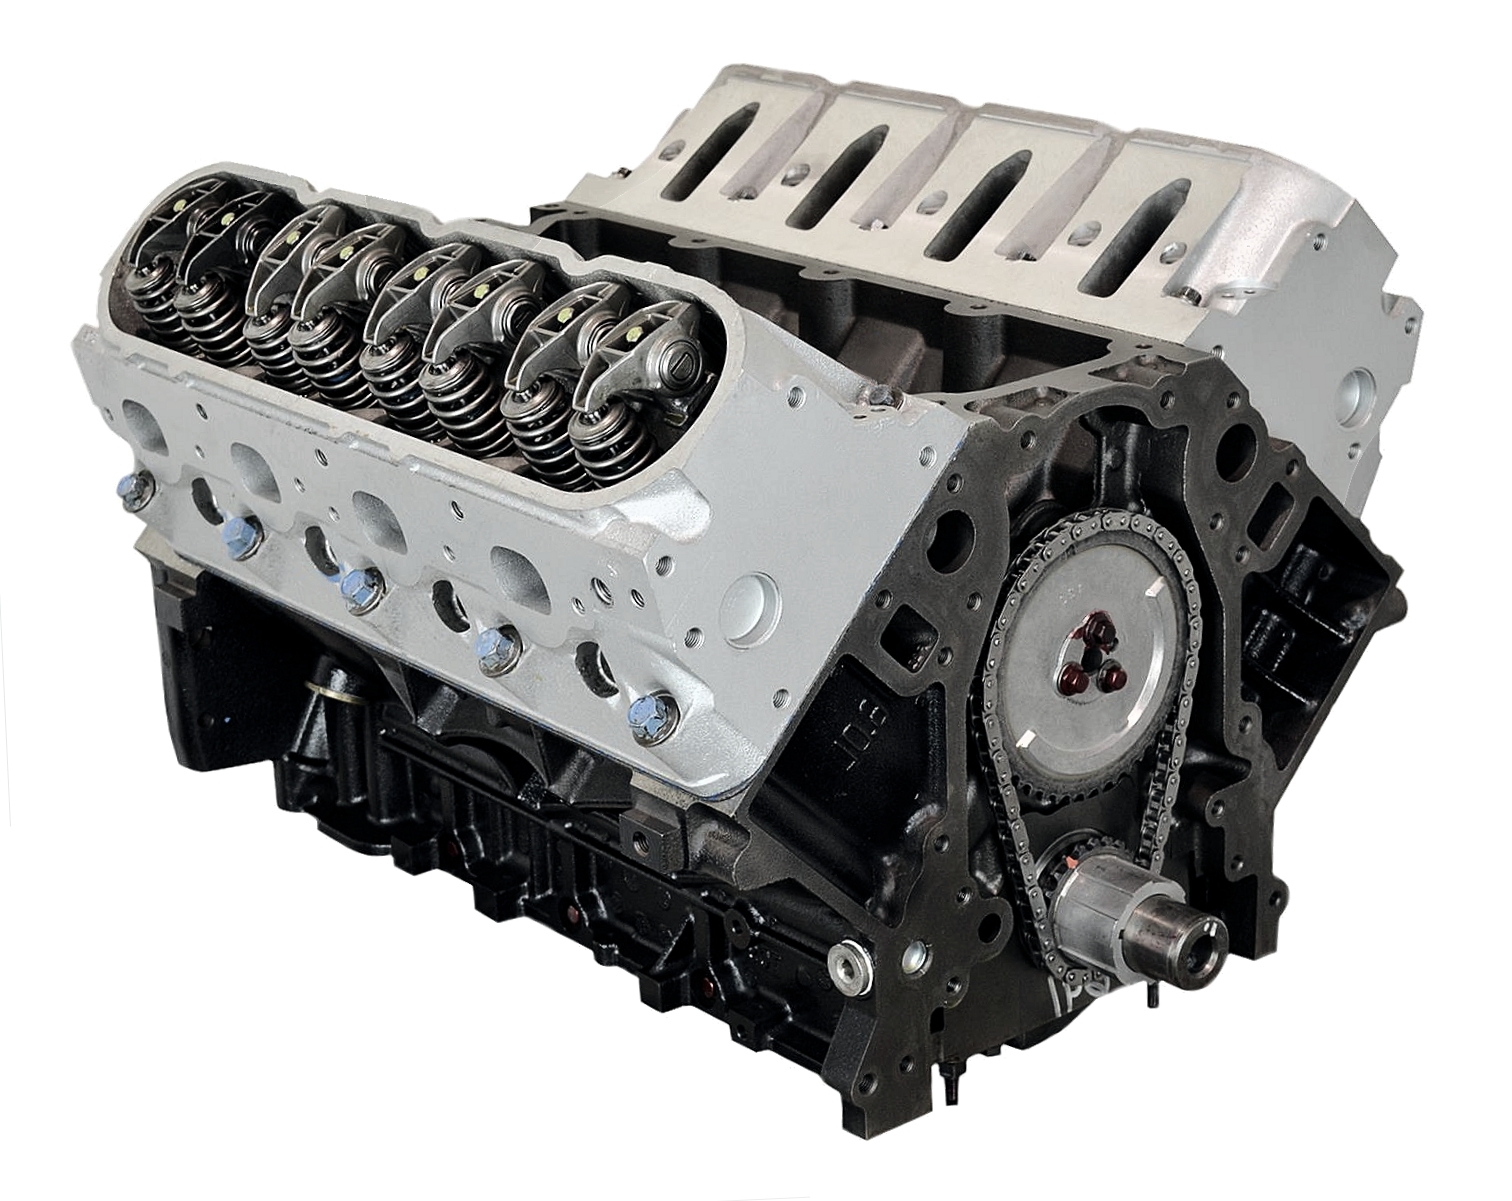 GMC Sierra 1500 - 5.3 LM7 Engine - 1999-2006 (Vin Code: T)